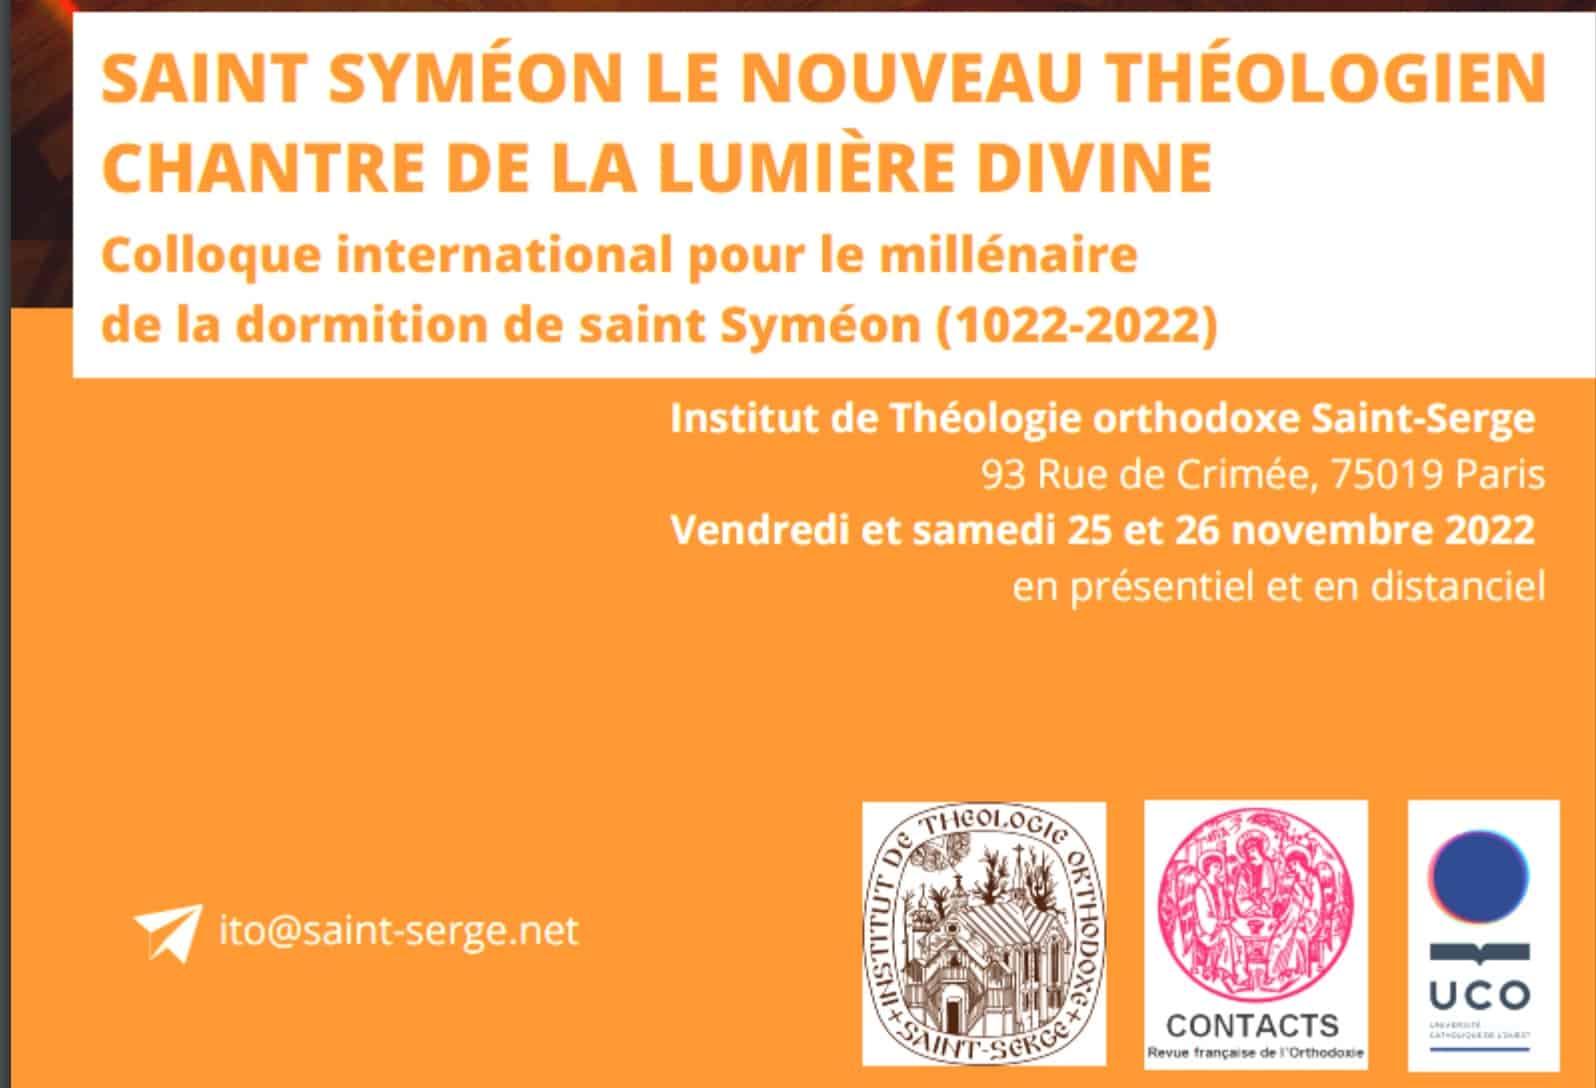 Colloque international : « saint syméon le nouveau théologien. chantre de la lumière divine » 25-26 novembre